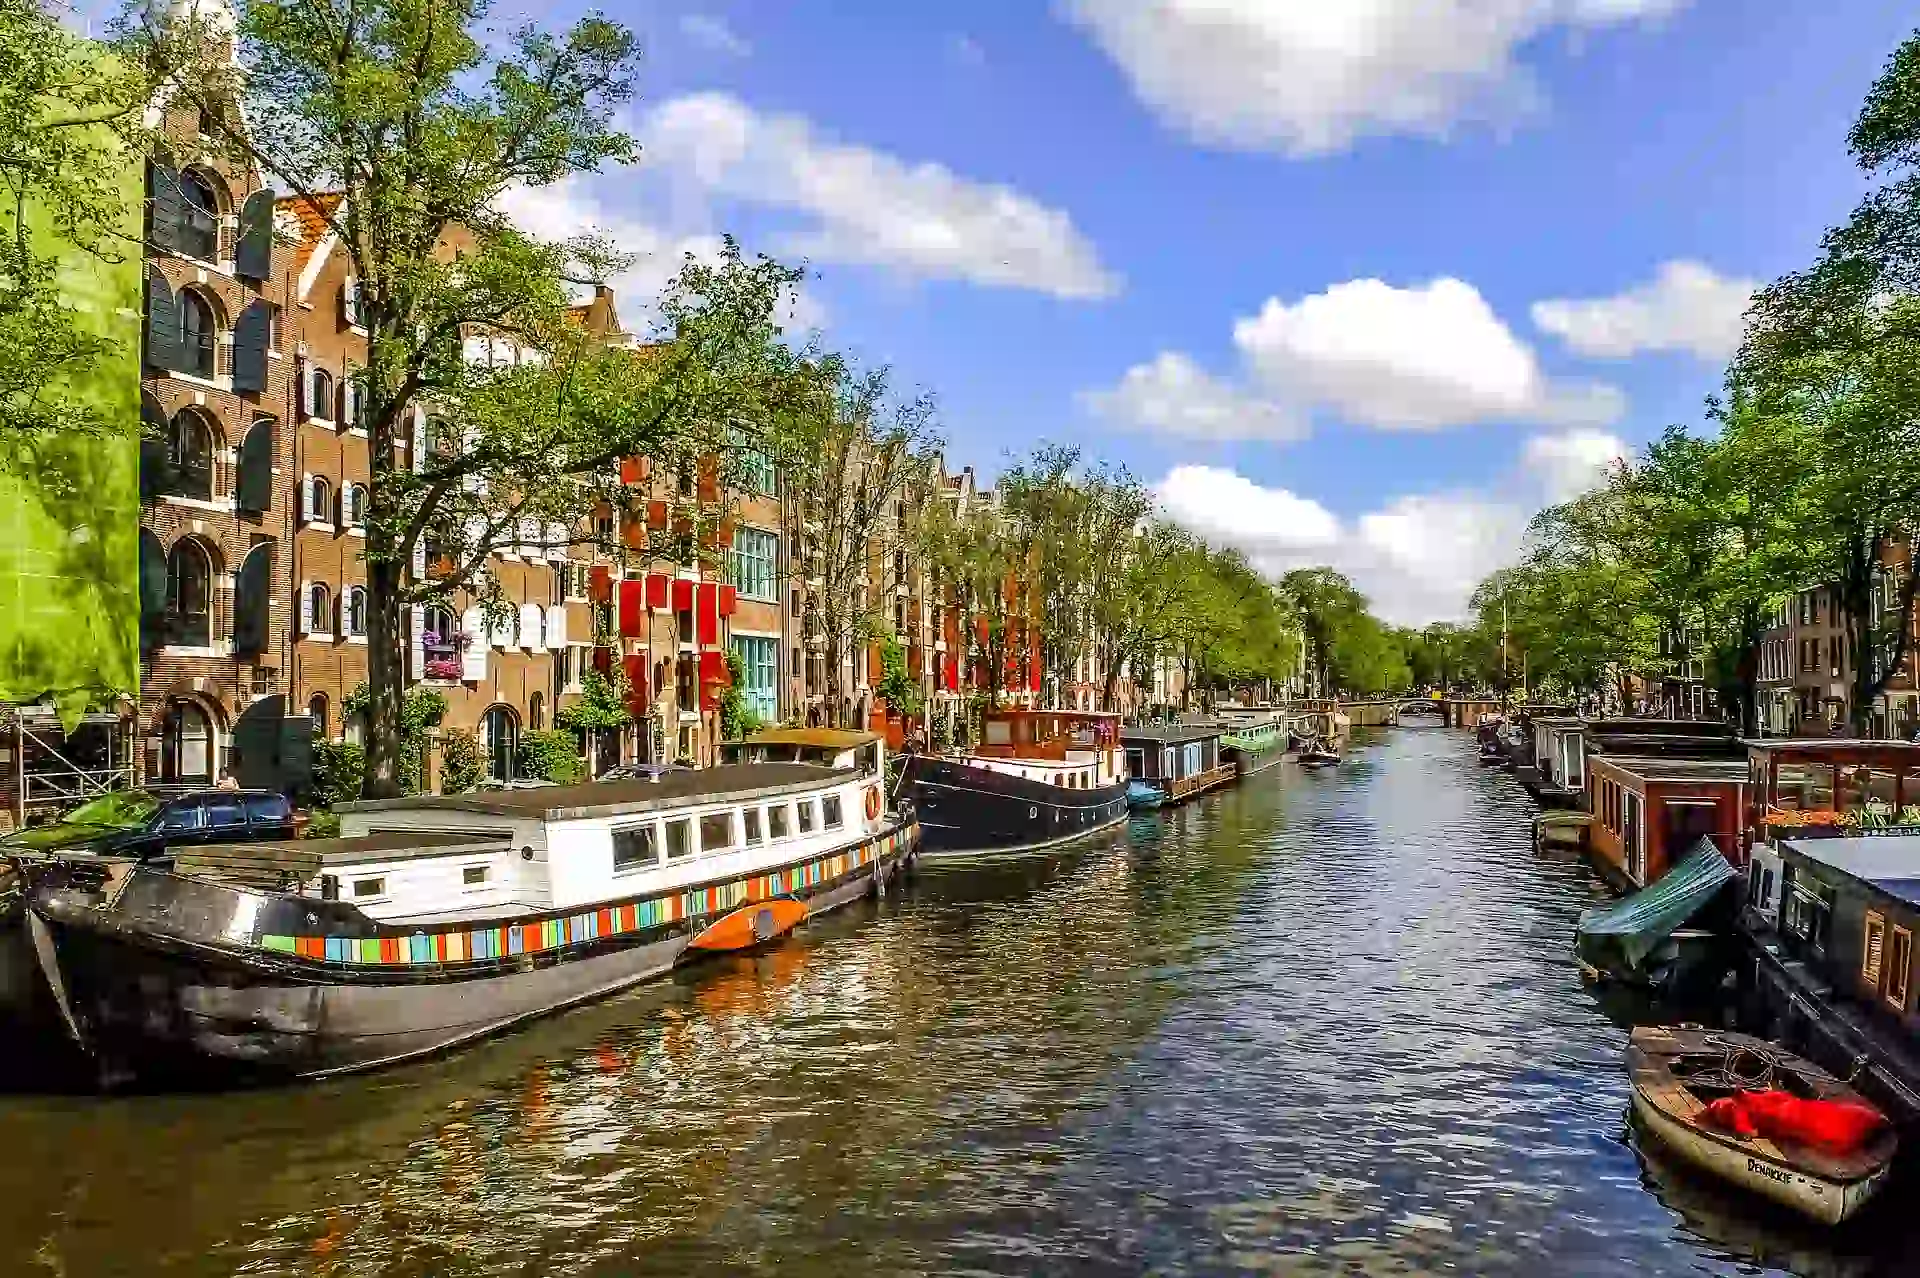 Day 4, Amsterdam